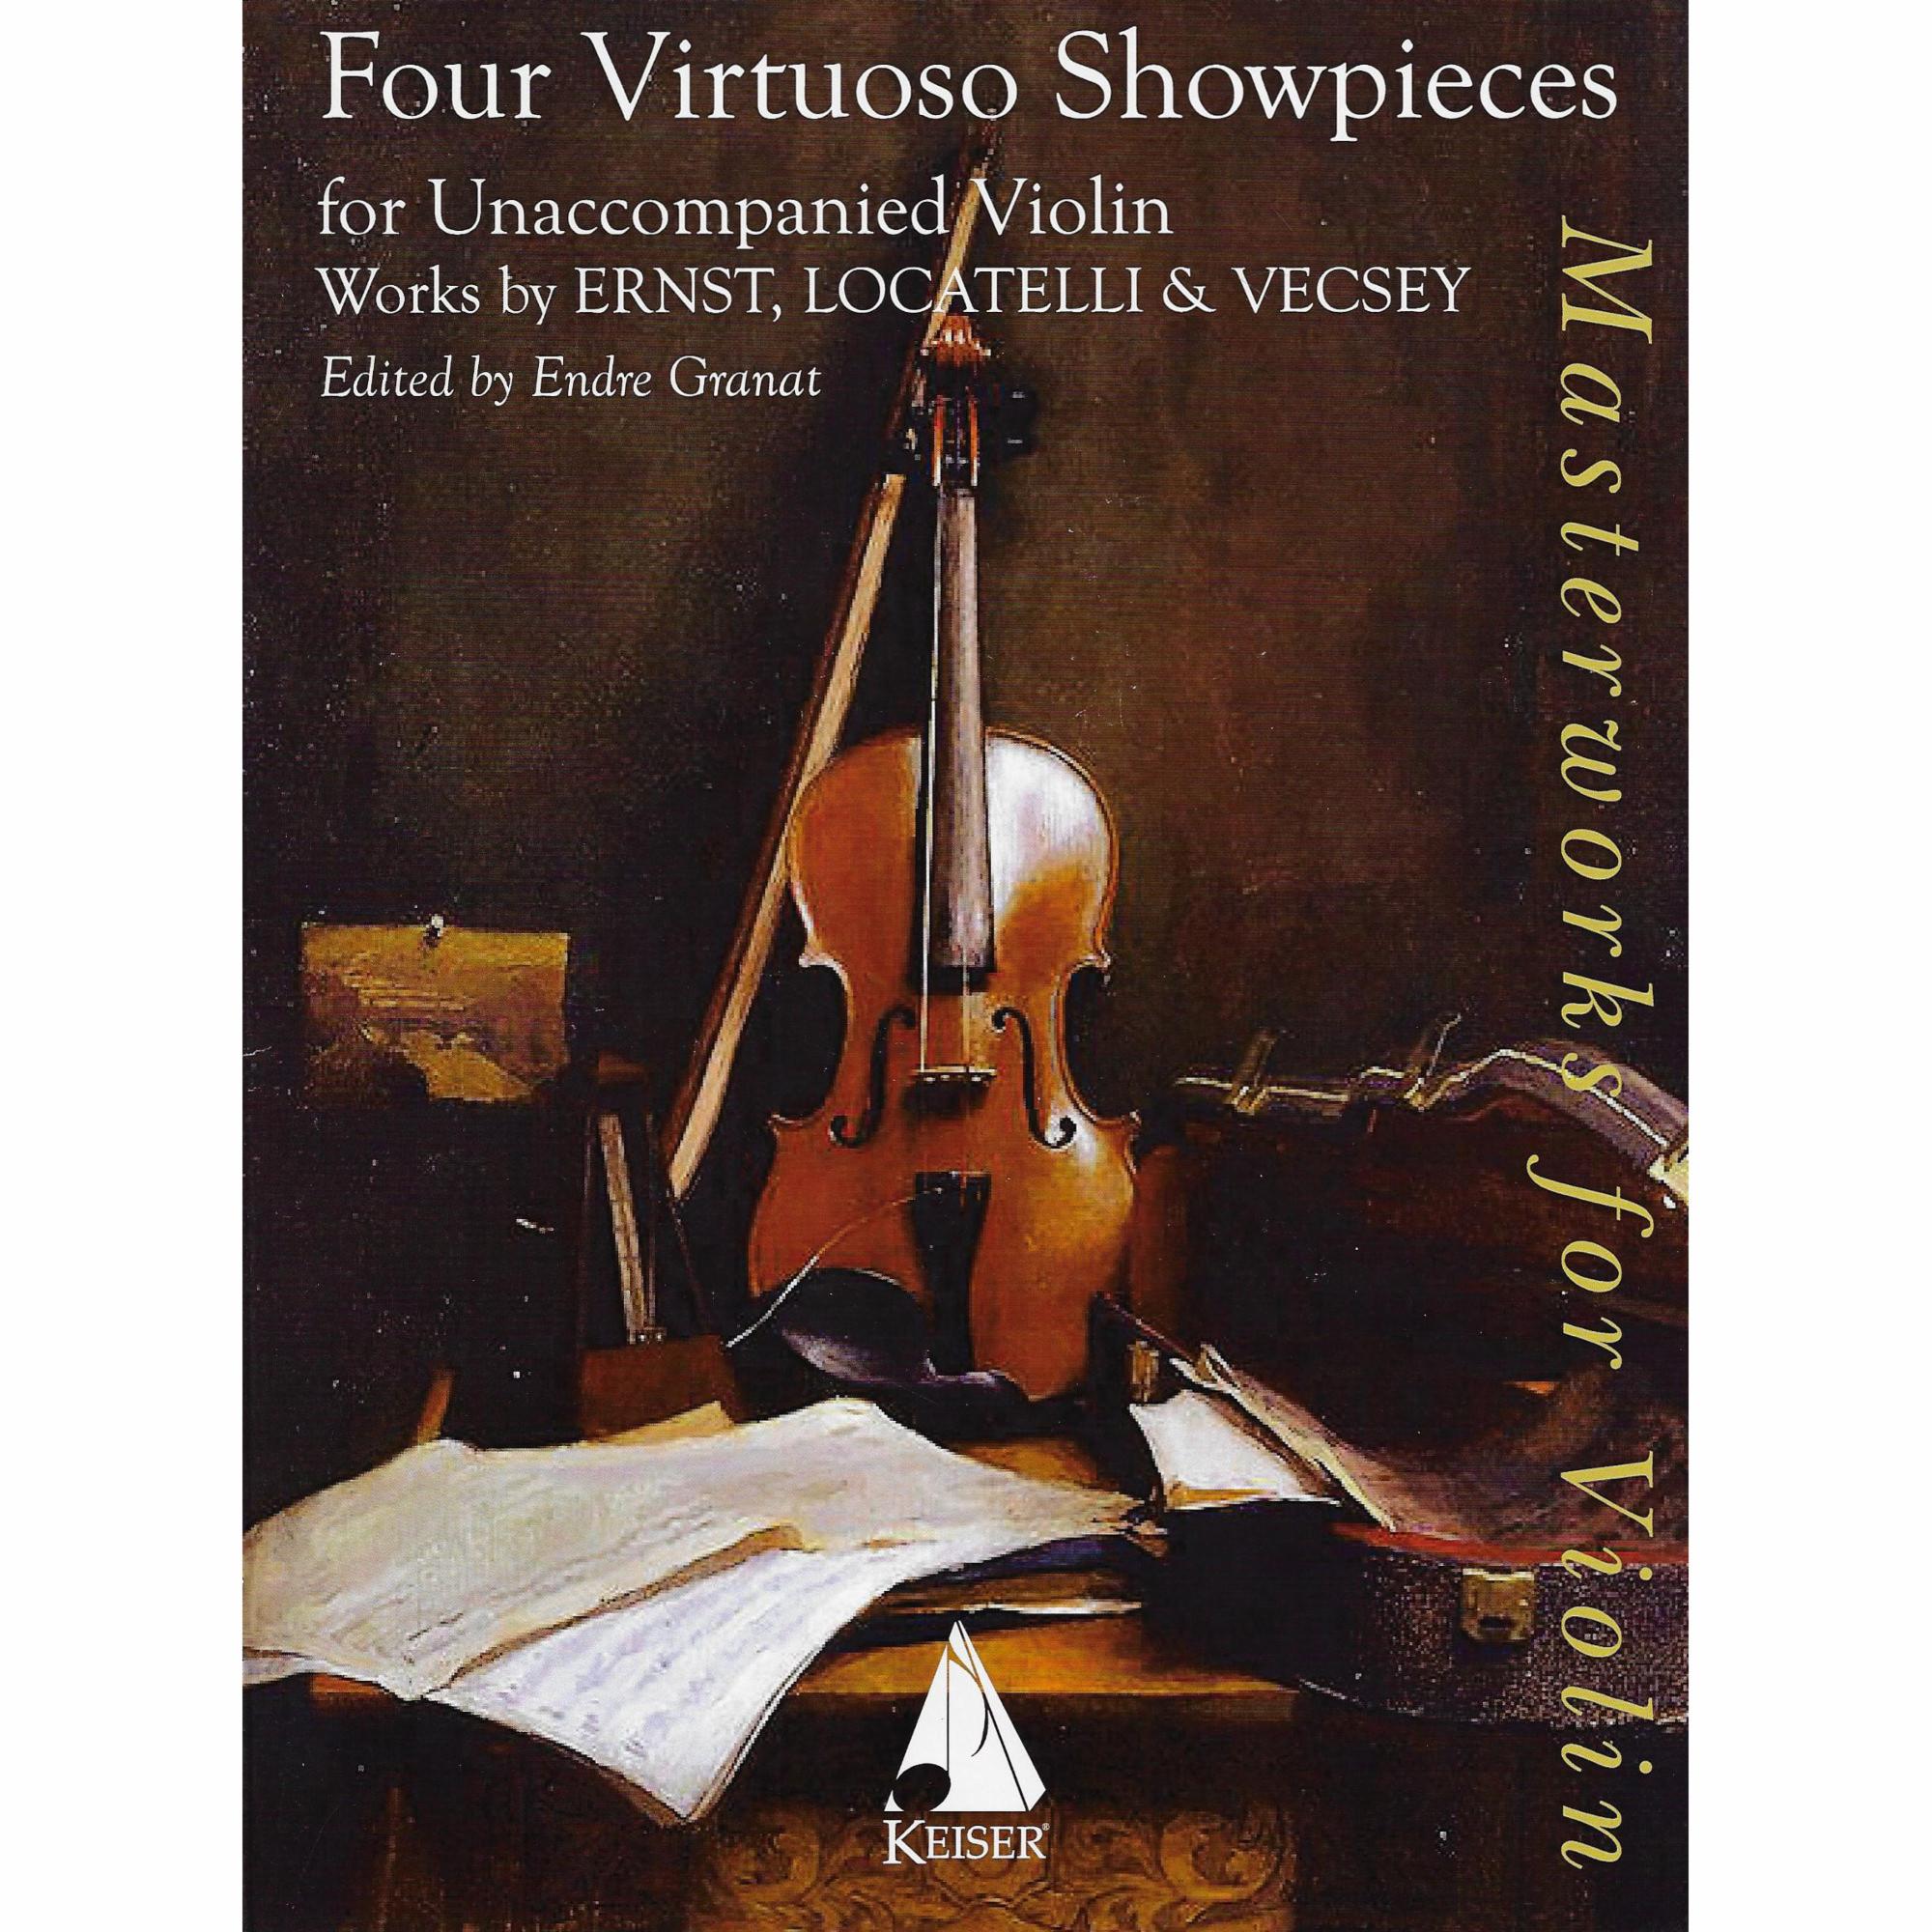 Four Virtuoso Showpieces for Solo Violin